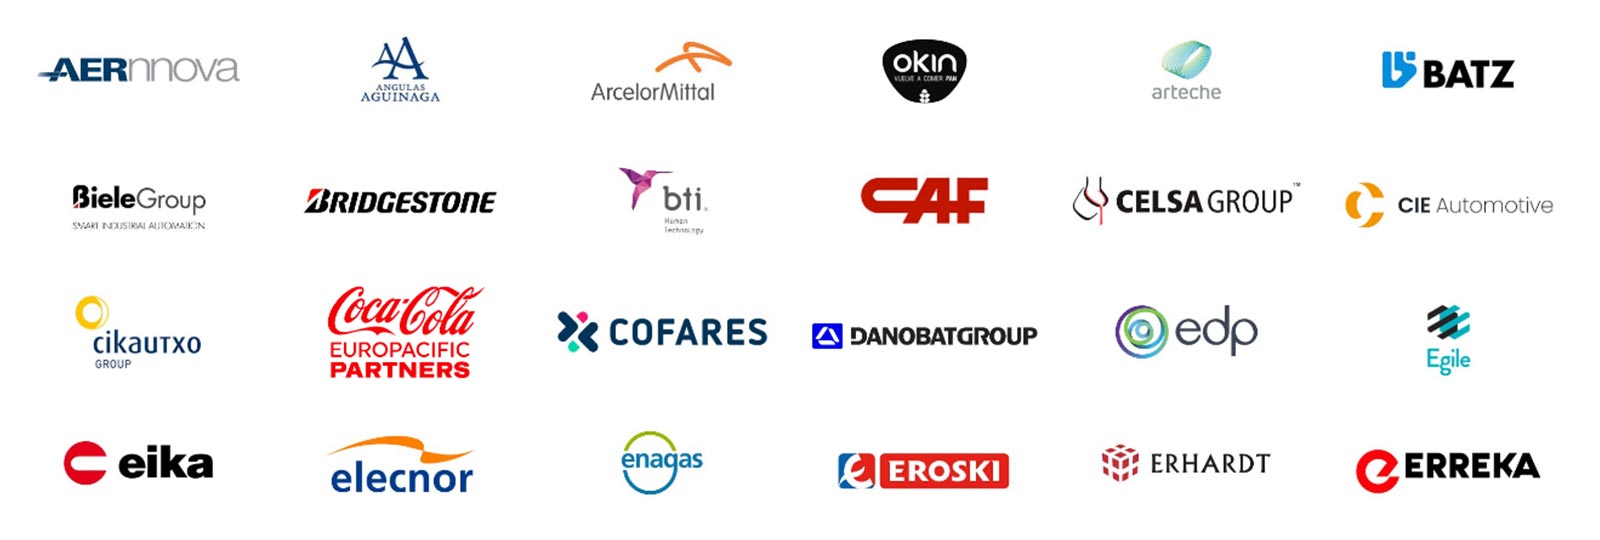 BIND 4.0 Partners Companies